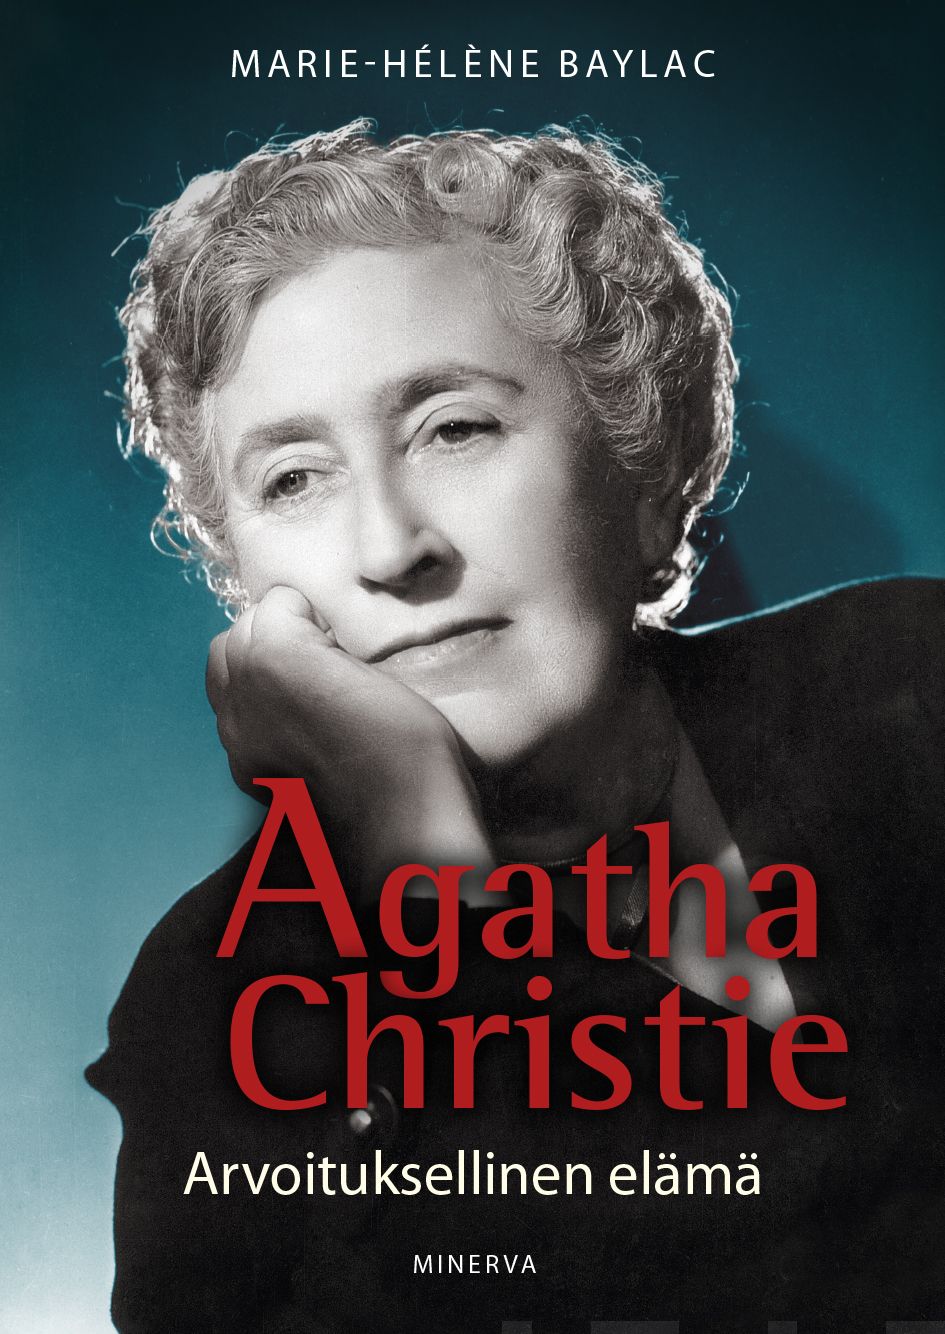 Baylac, Marie-Helene - Agatha Christie: Arvoituksellinen elämä, e-kirja